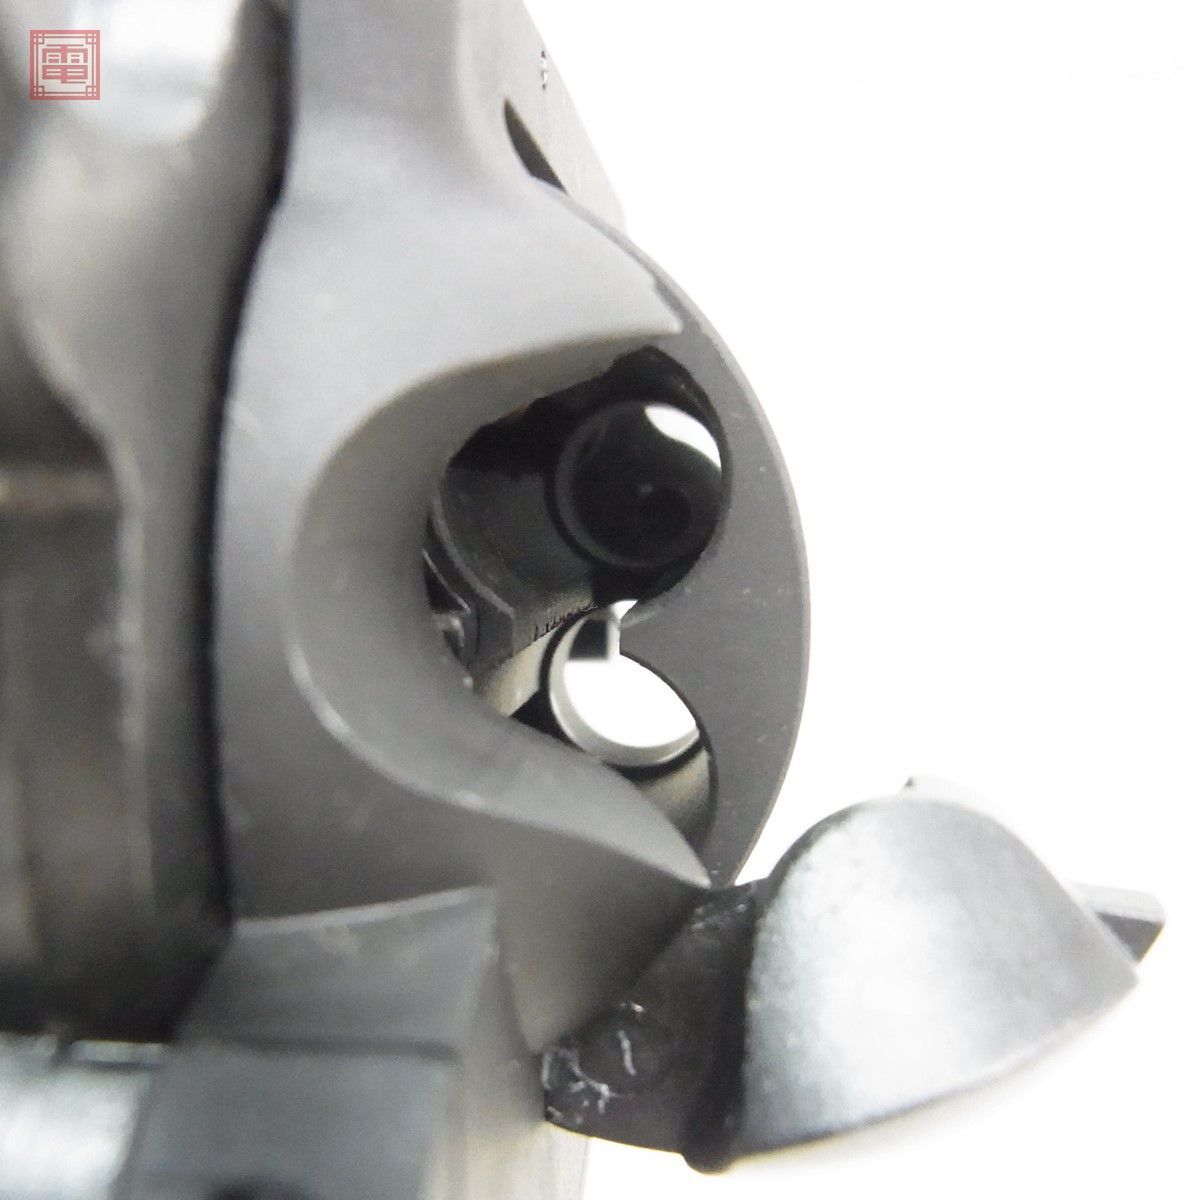  Marushin газ револьвер super черный Hawk 10.5 дюймовый черный HW 6mm X картридж specification из дерева рукоятка текущее состояние товар [20